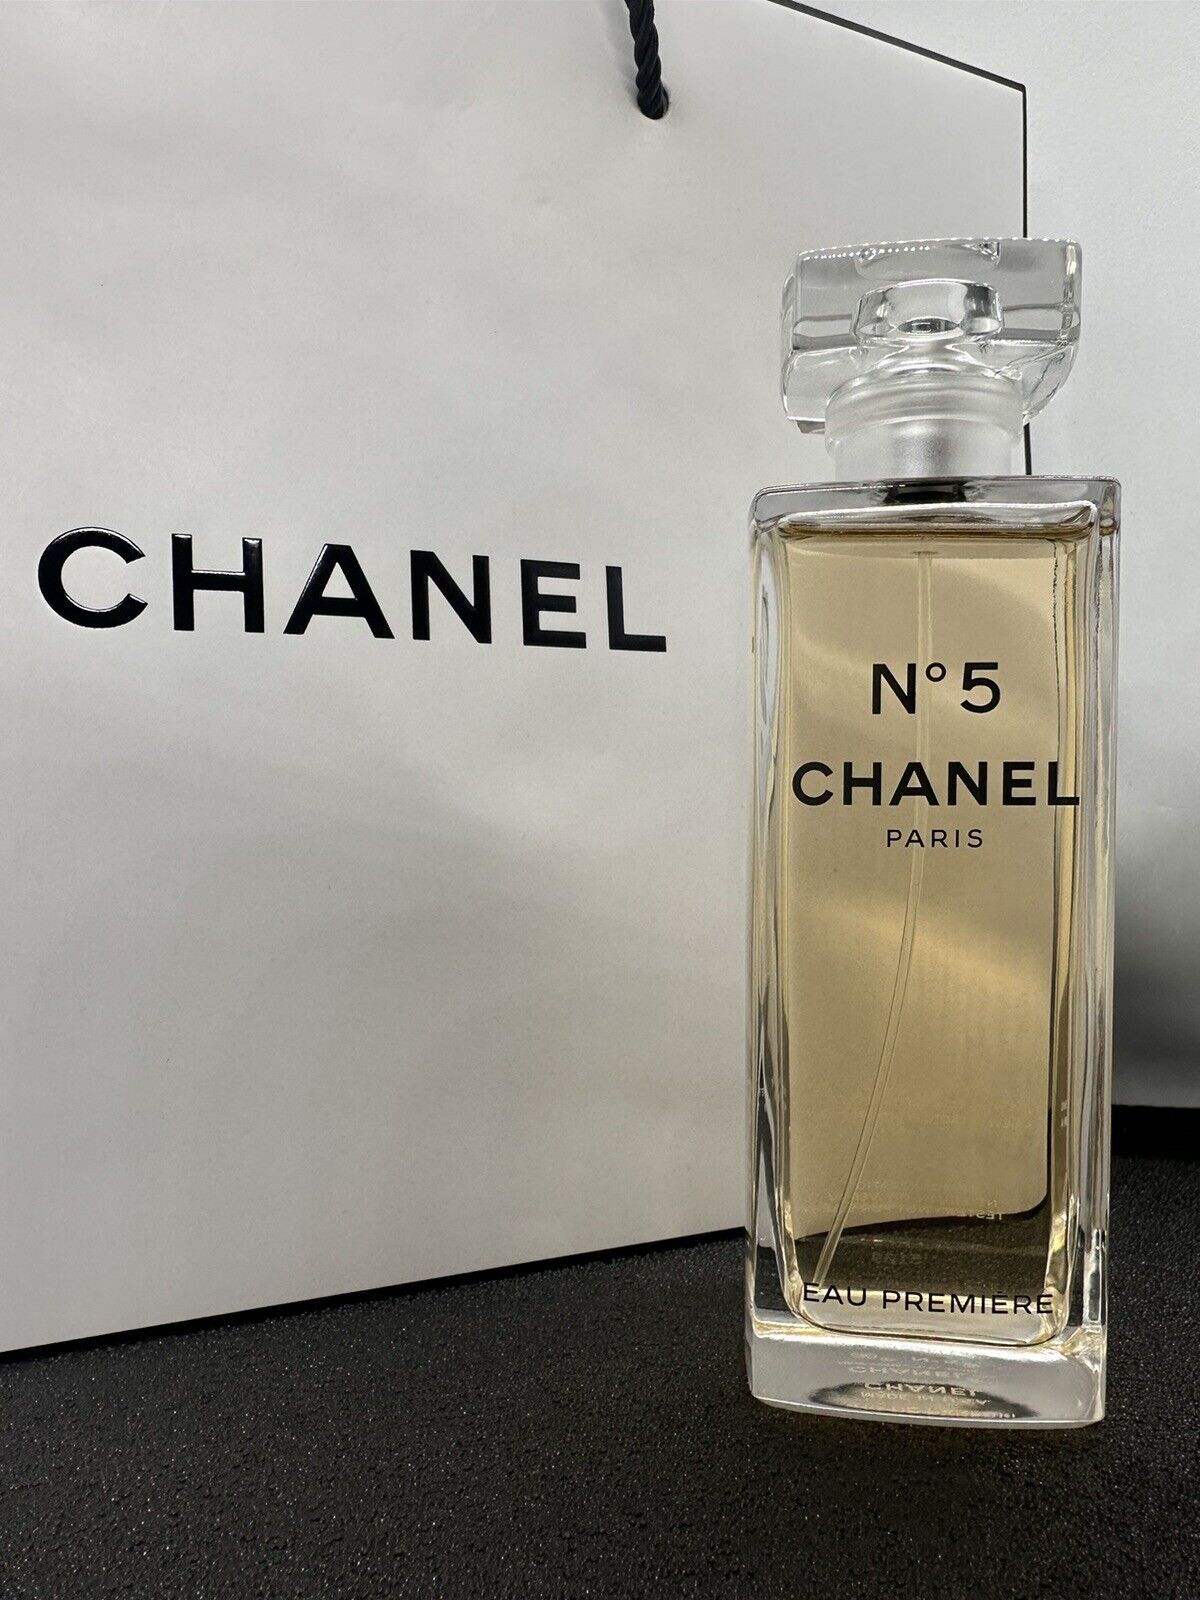 CHANEL  N5 Eau Premiere 150ML, Rare Original Bottle  Eau de Parfume  Spray